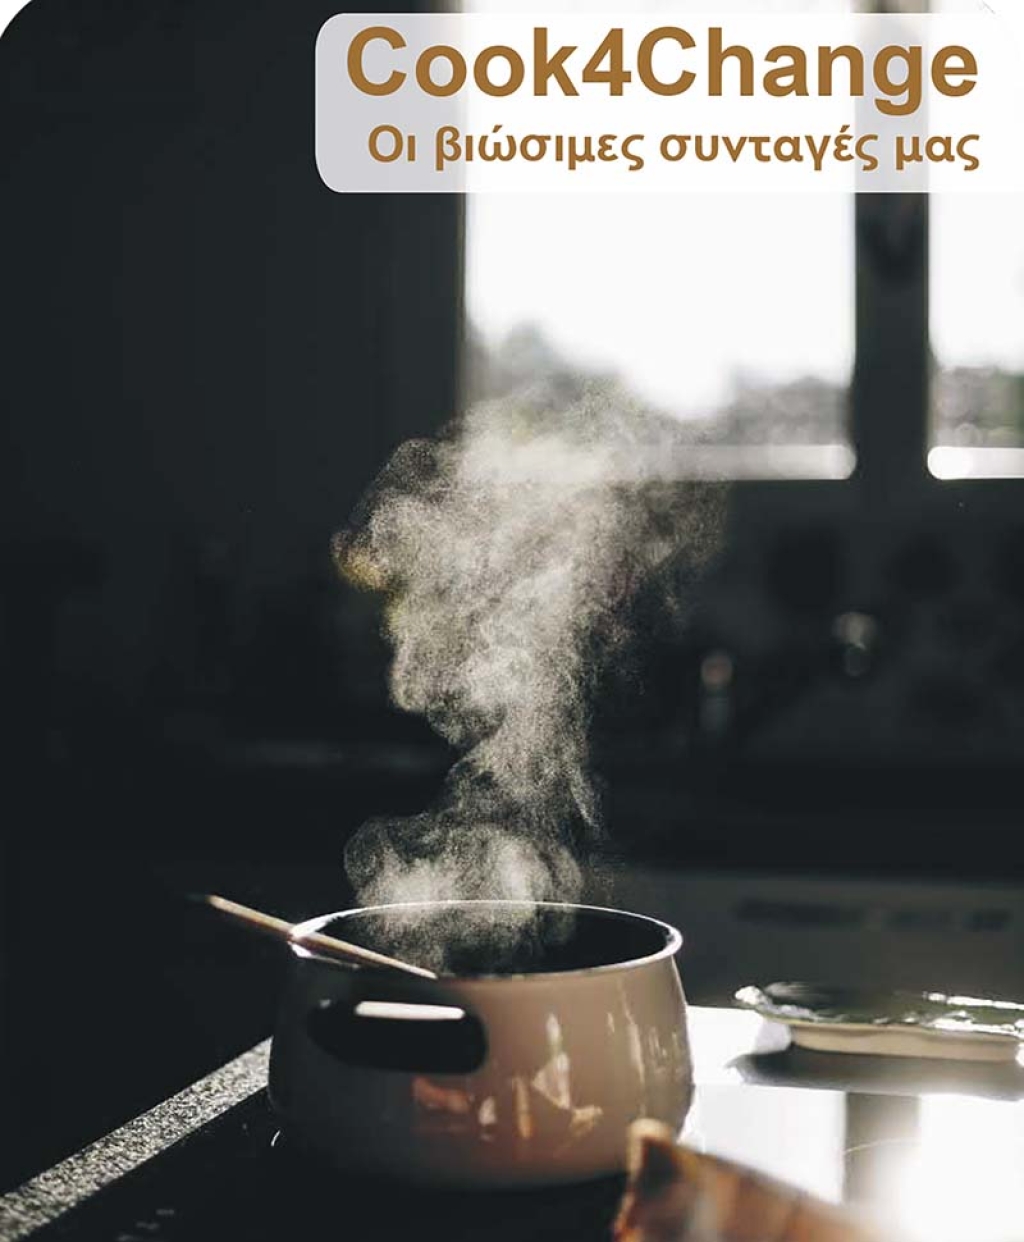 Παρουσίαση του βιβλίου συνταγών «Cook4Change, οι βιώσιμες συνταγές μας».